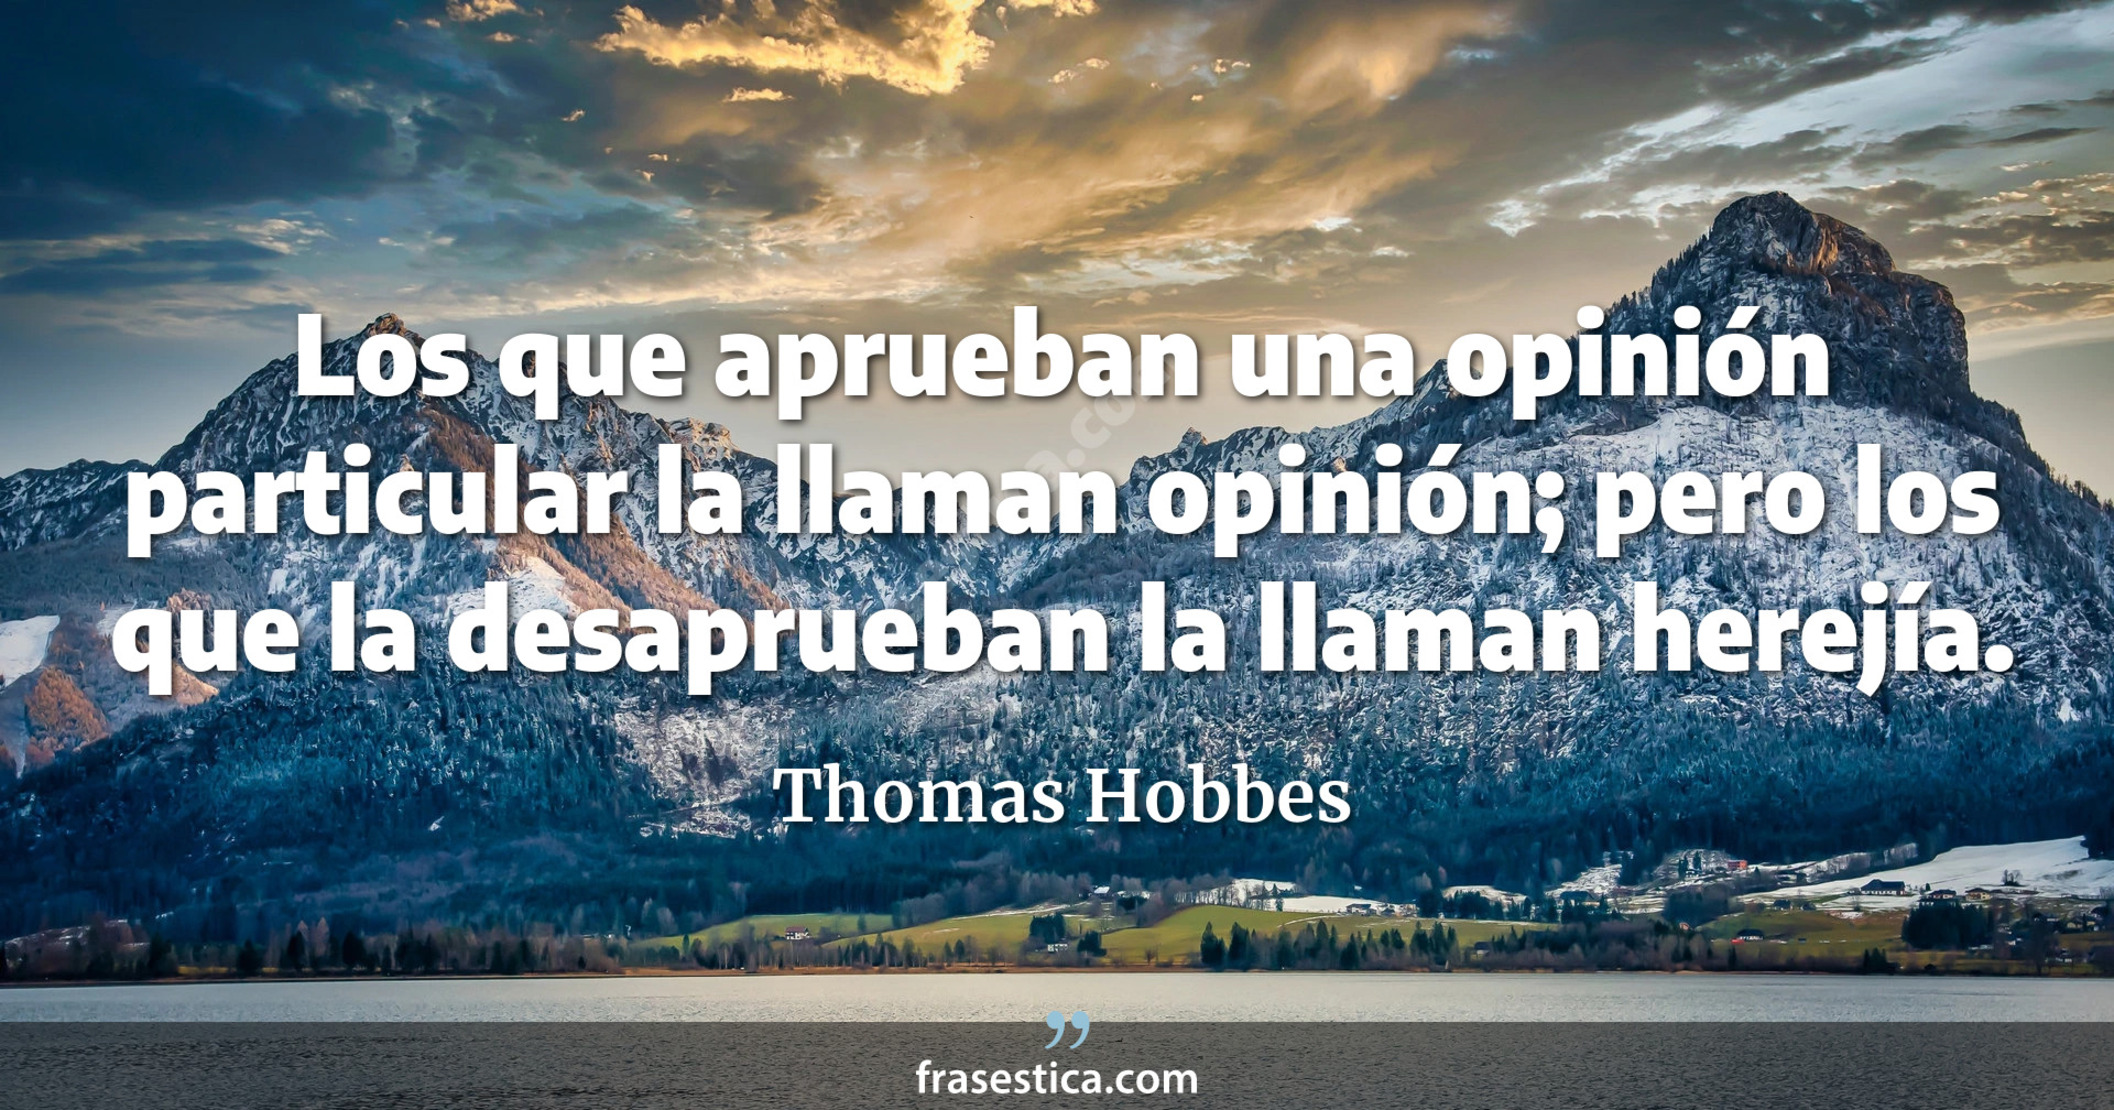 Los que aprueban una opinión particular la llaman opinión; pero los que la desaprueban la llaman herejía.  - Thomas Hobbes